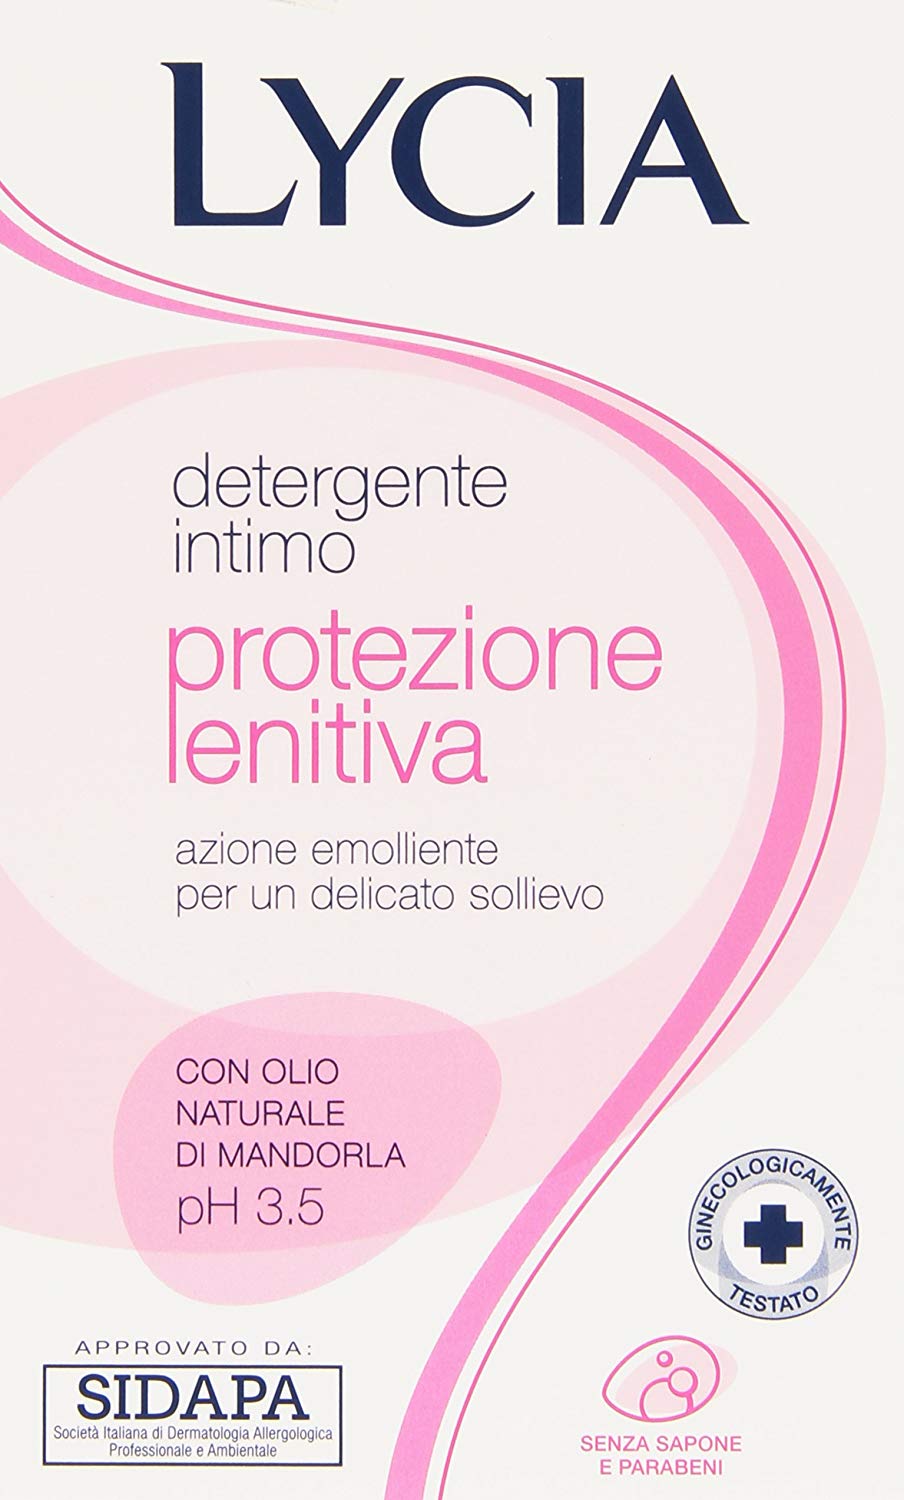 Lycia Protezione Lenitiva Detergente Intimo 250ml